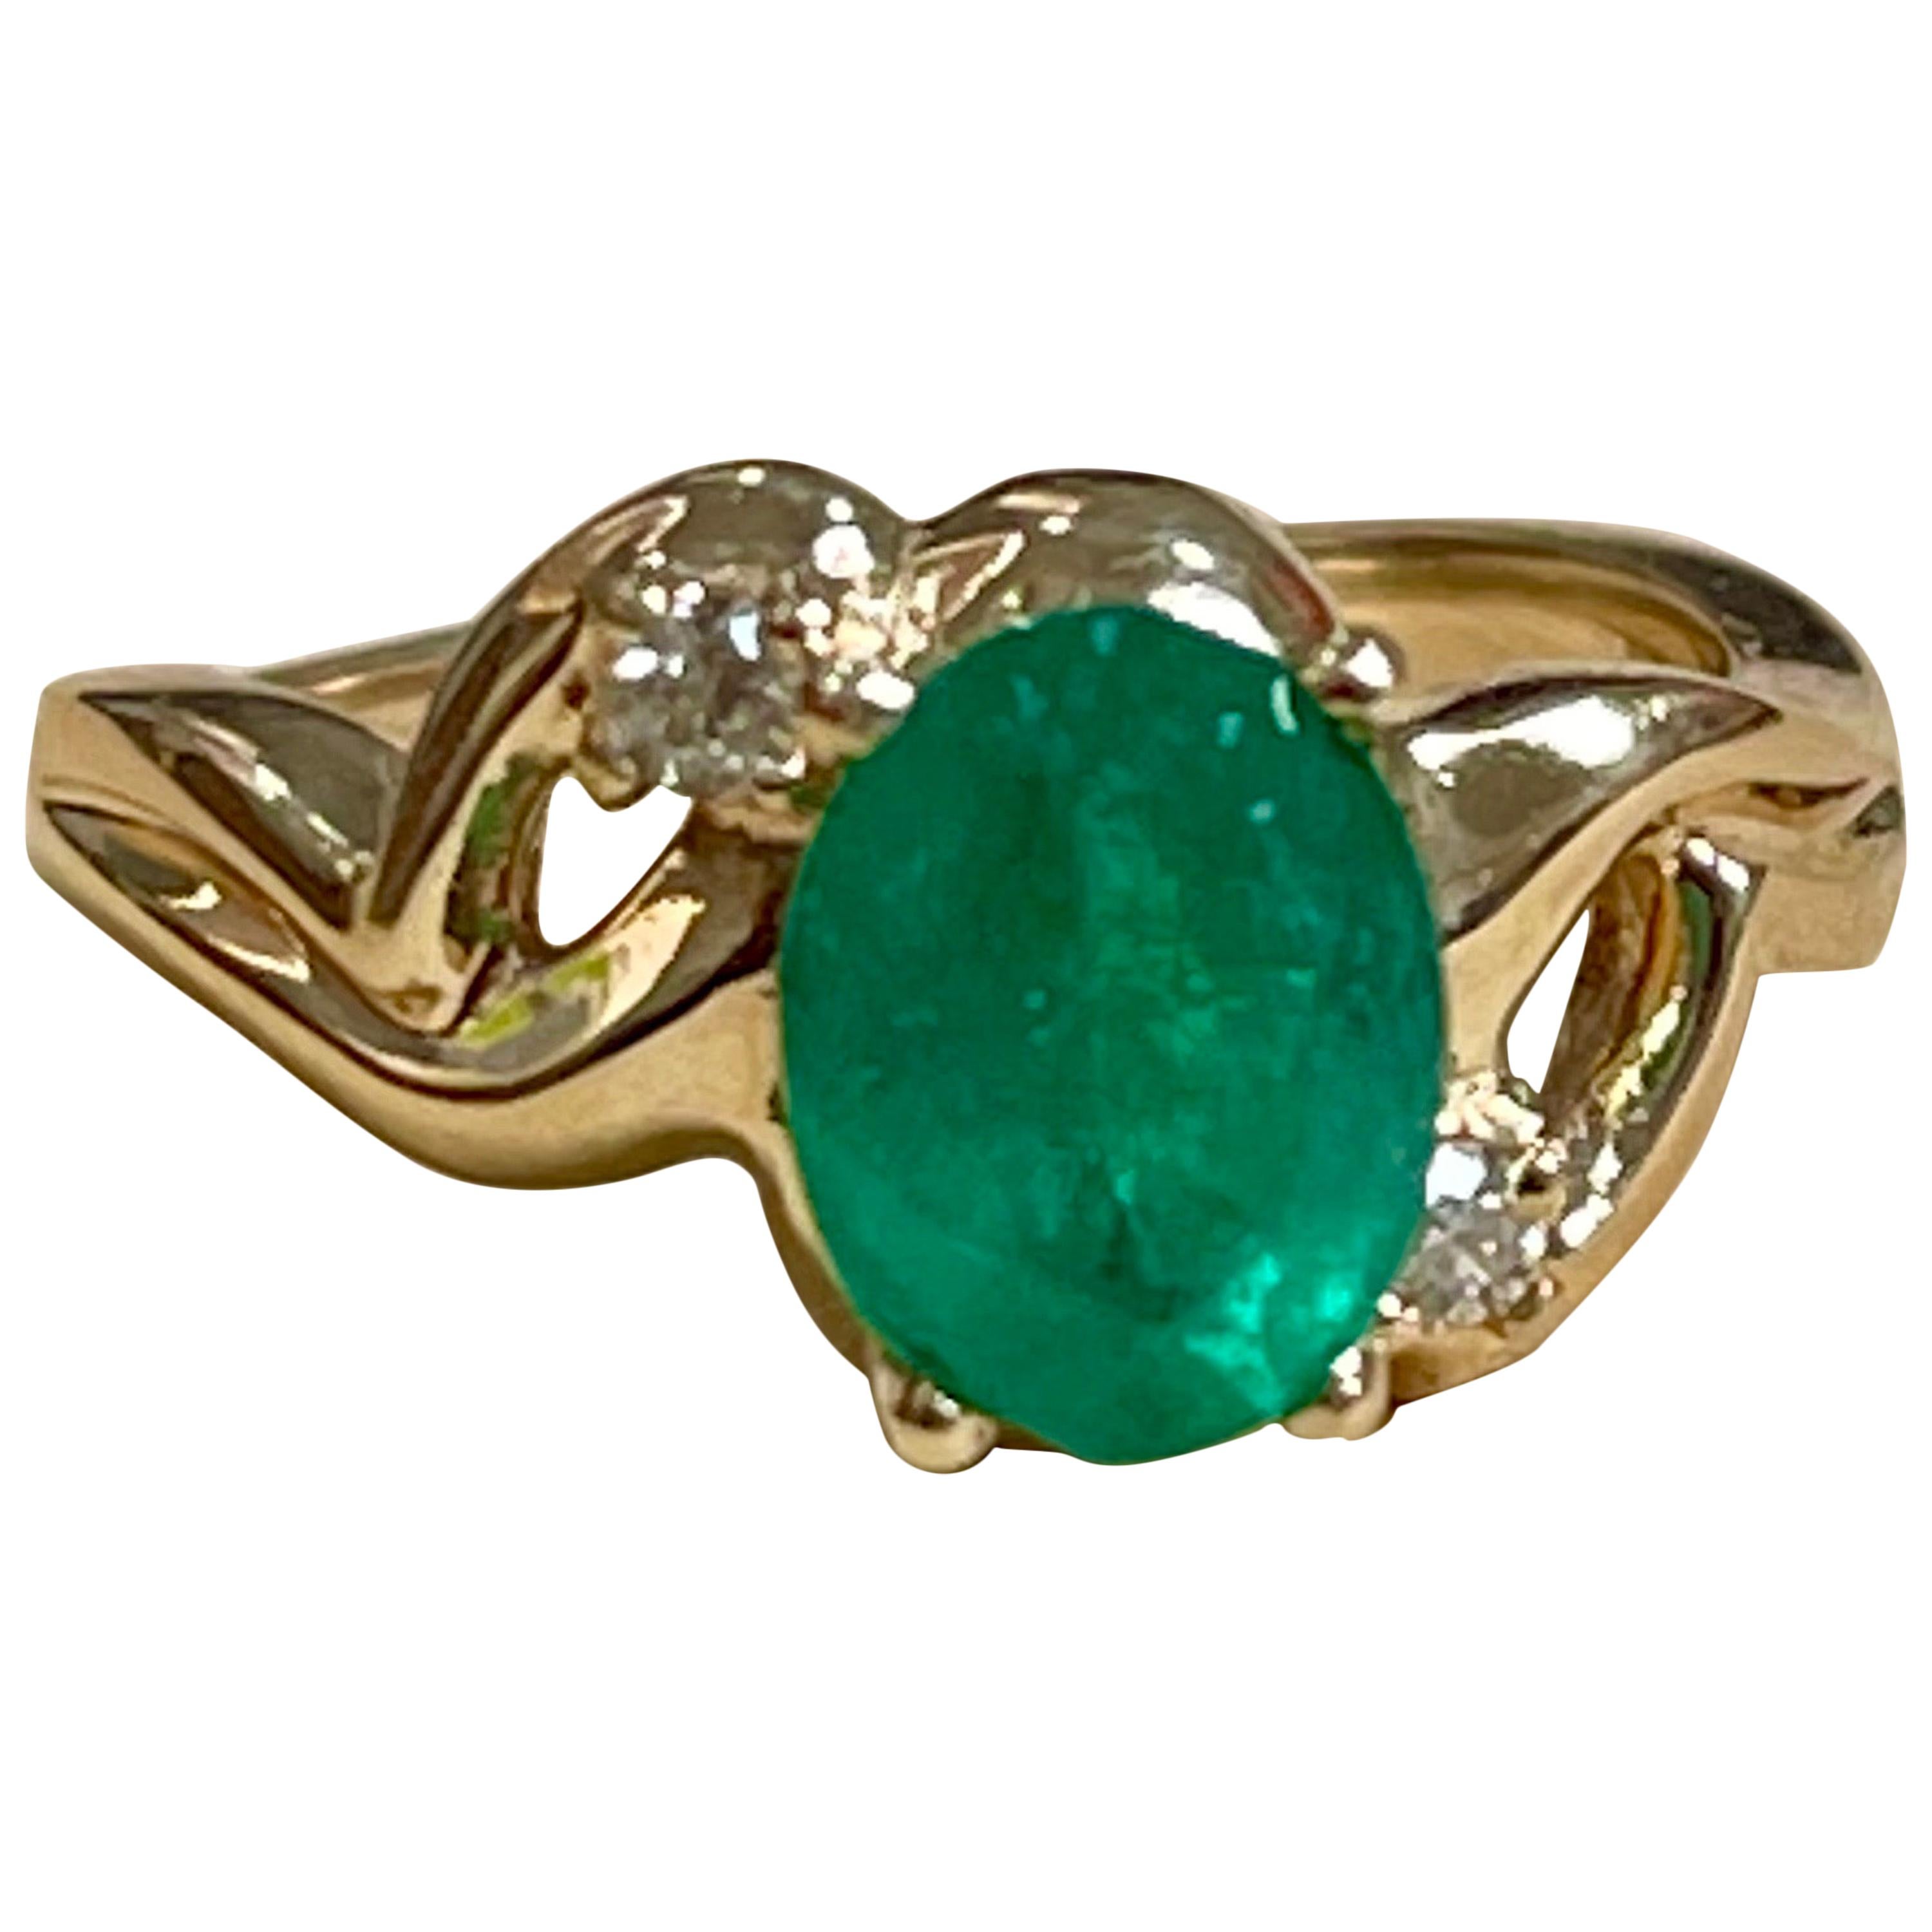 1.8 Carat Natural Oval Emerald and Diamond Ring 14 Karat Yellow Gold